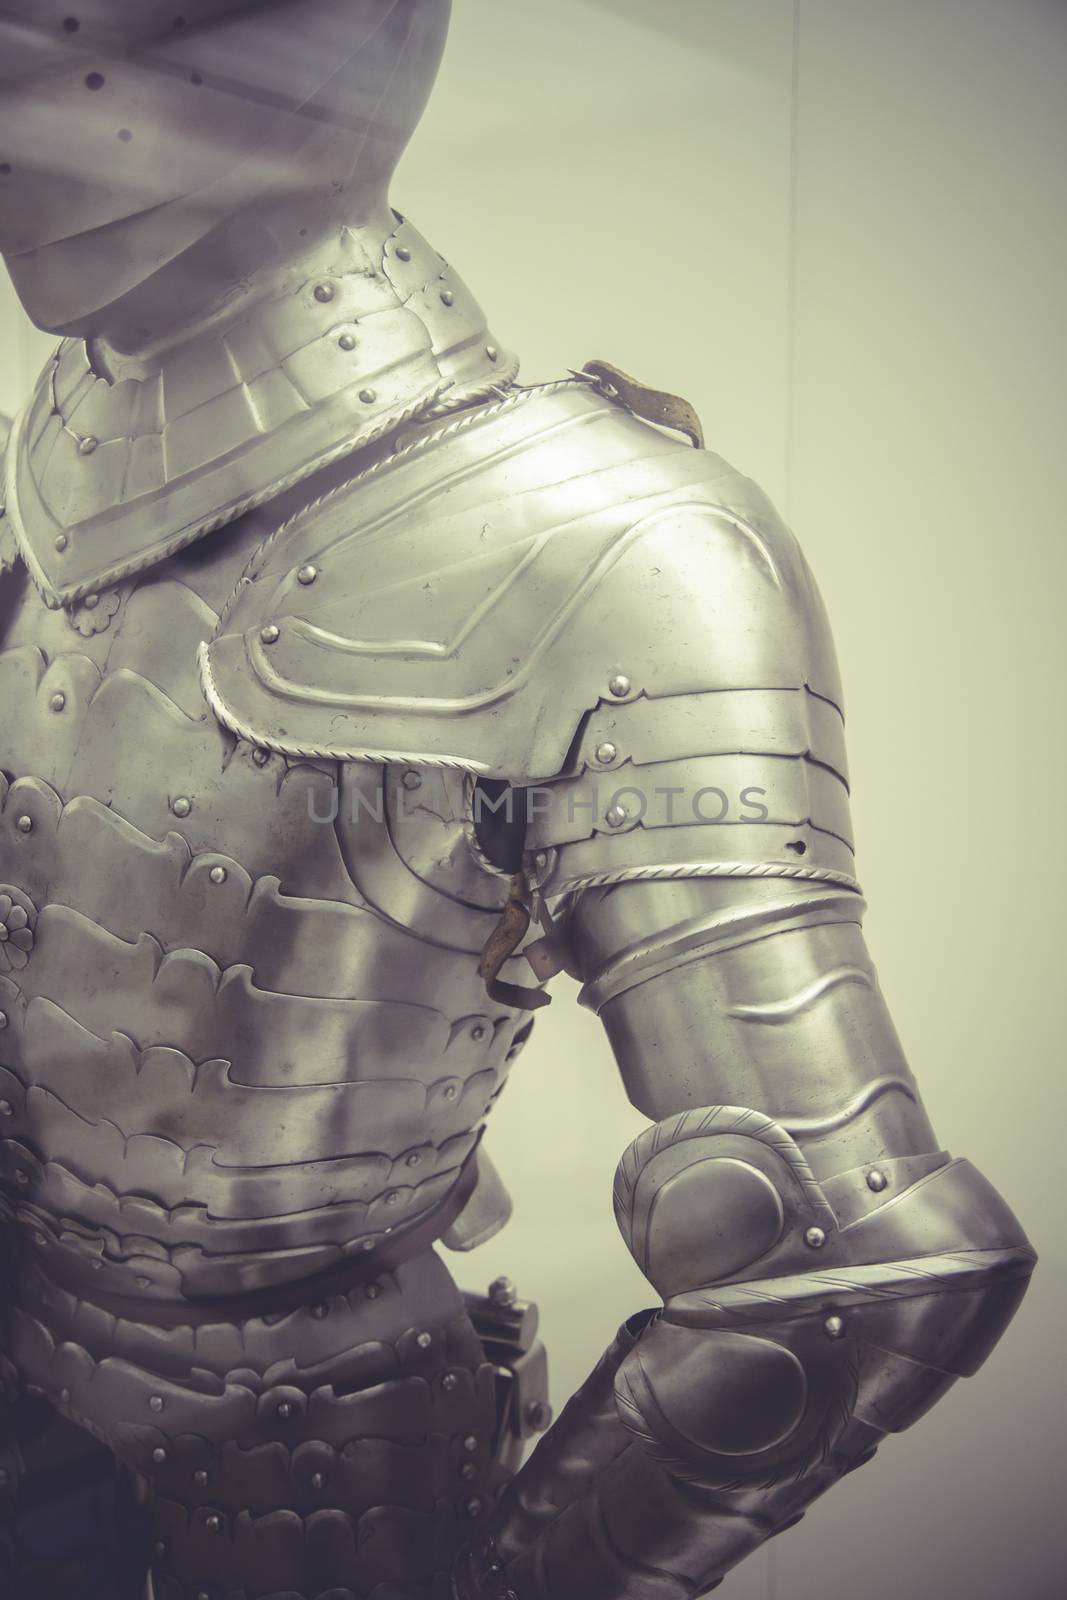 Security Medieval iron armor, Spanish armada